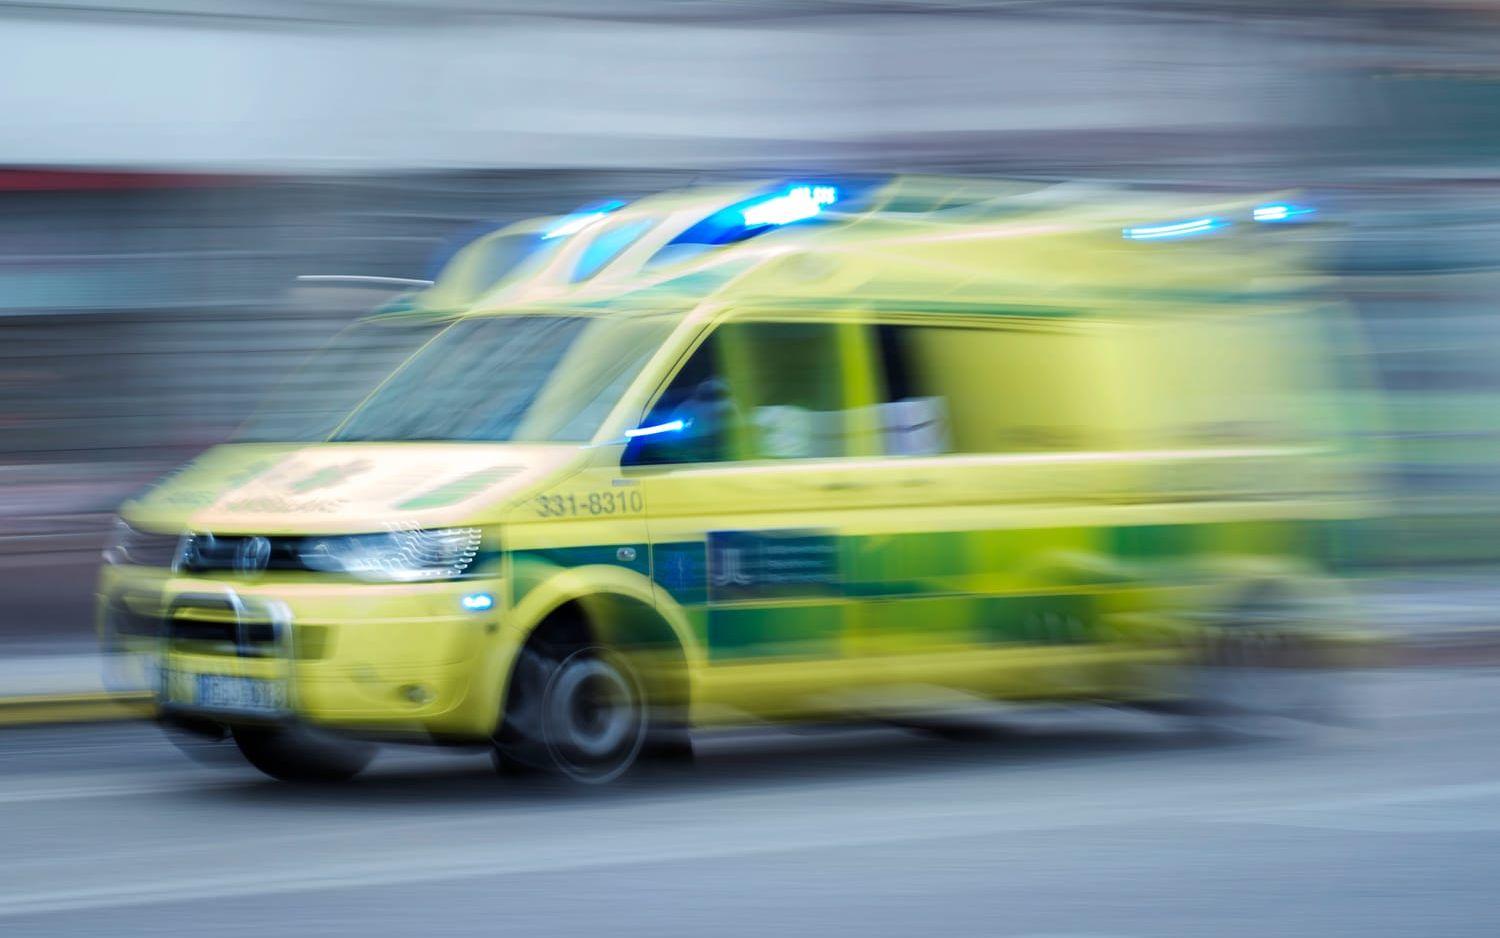 Glenn Hysén är rejält förbannad efter attackerna på ambulanser i Sverige. Bild: Bildbyrån